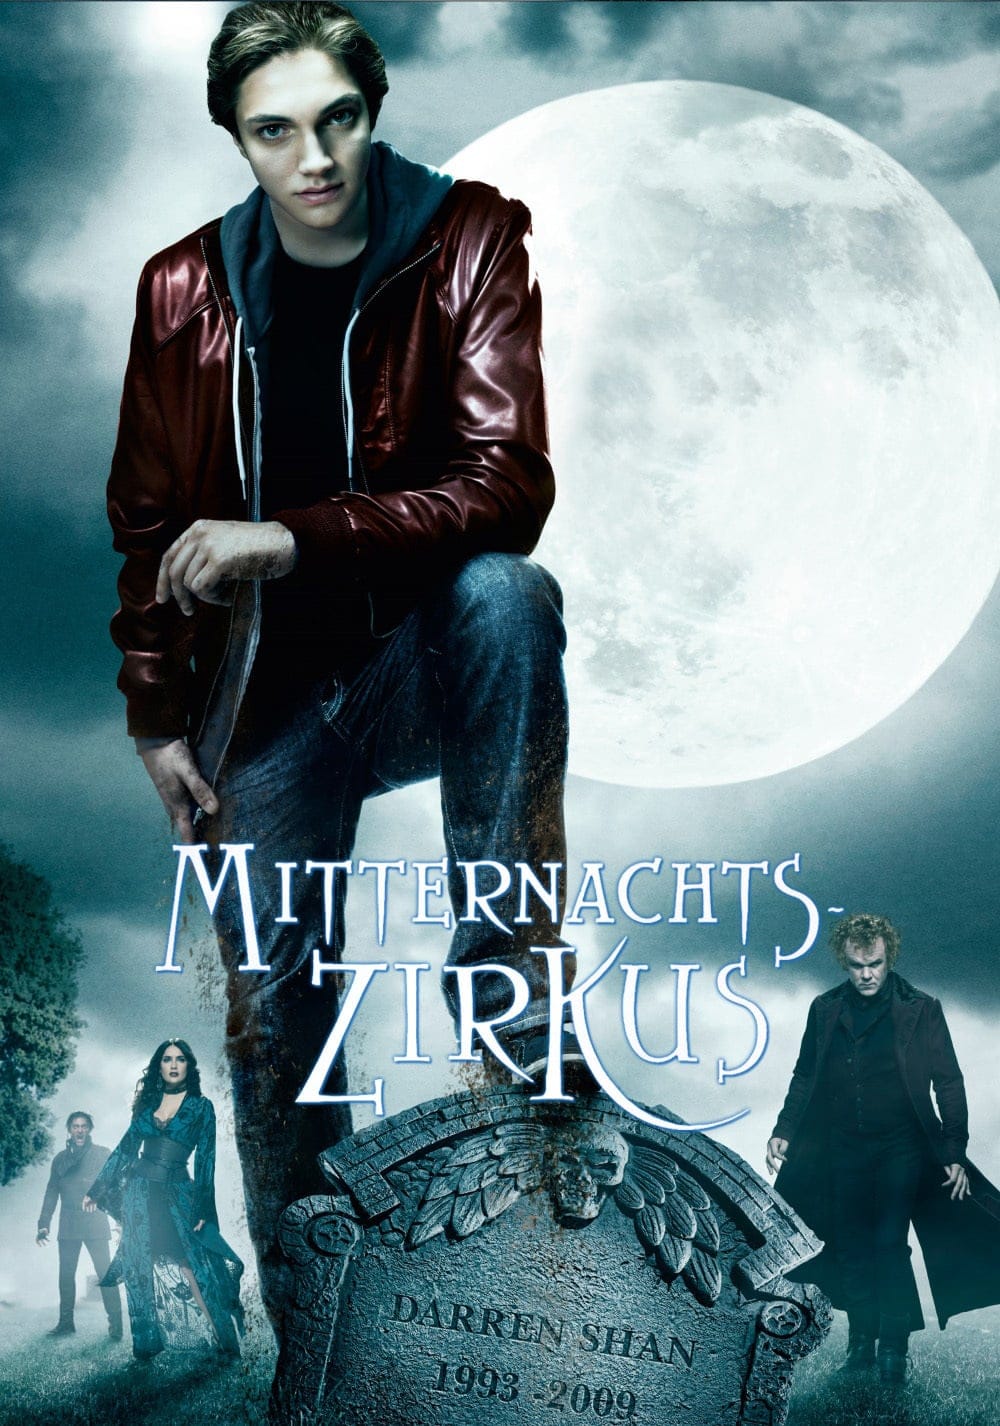 Plakat von "Mitternachtszirkus - Willkommen in der Welt der Vampire"